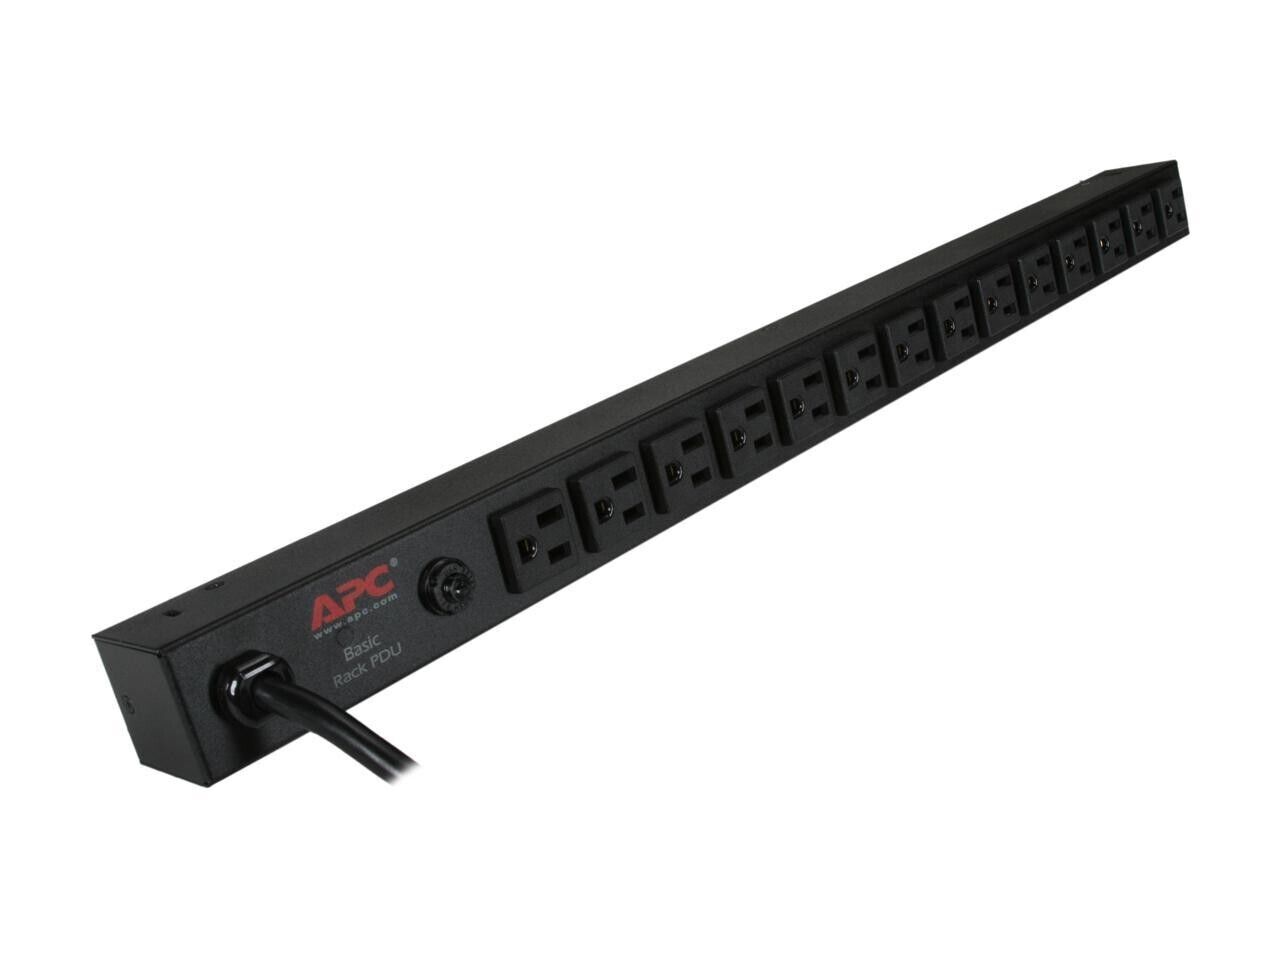 APC AP9567 Basic Rack-Mount PDU Power Distribution Strip